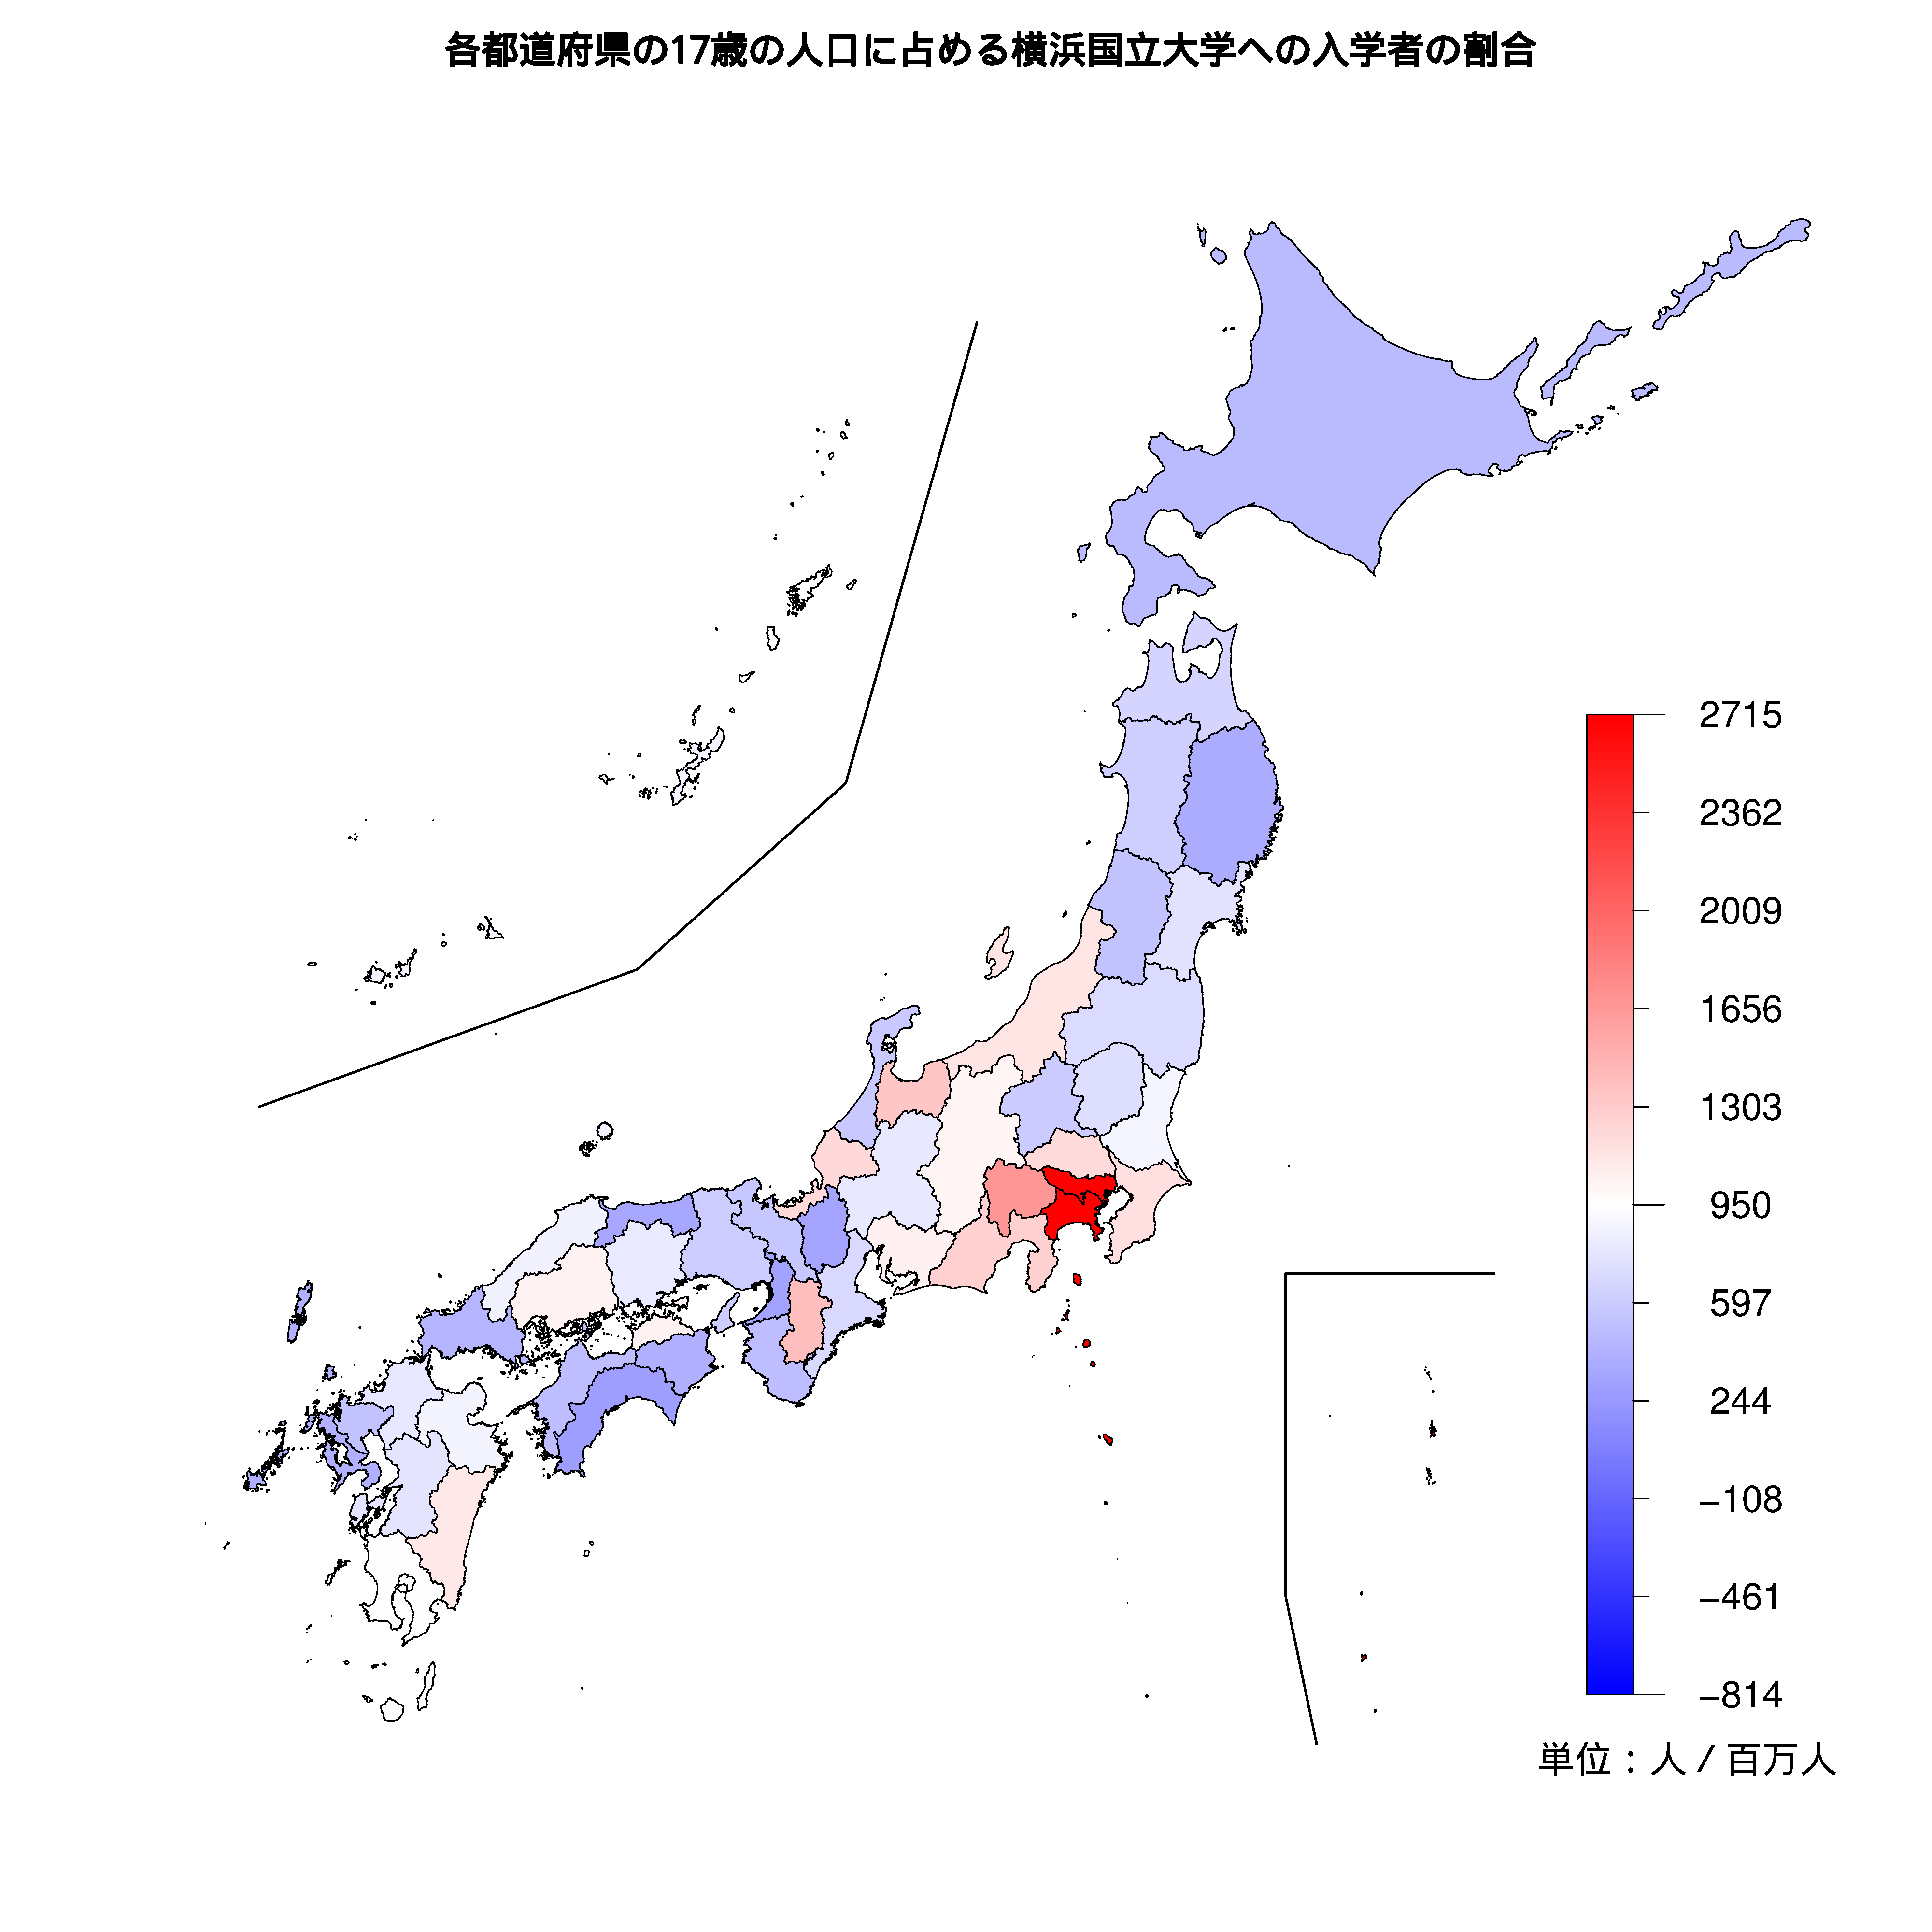 横浜国立大学への入学者が多い都道府県の色分け地図